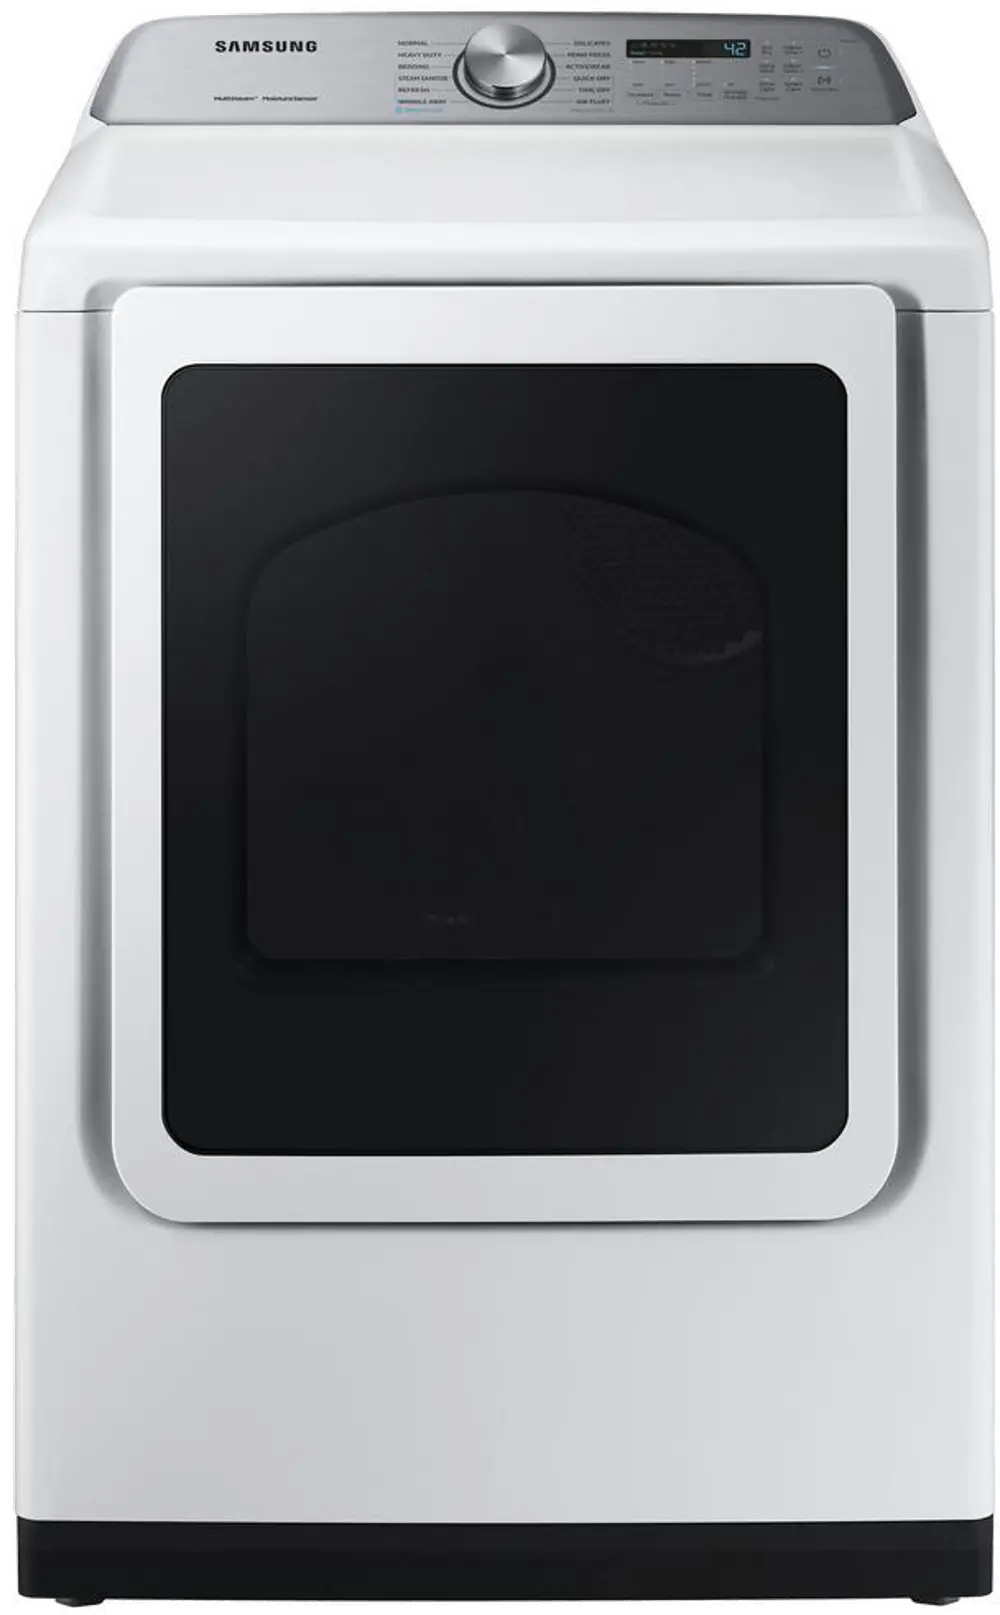 DVG50R5400W Samsung Steam Sanitize+ Gas Dryer - 7.4 cu. ft. White-1